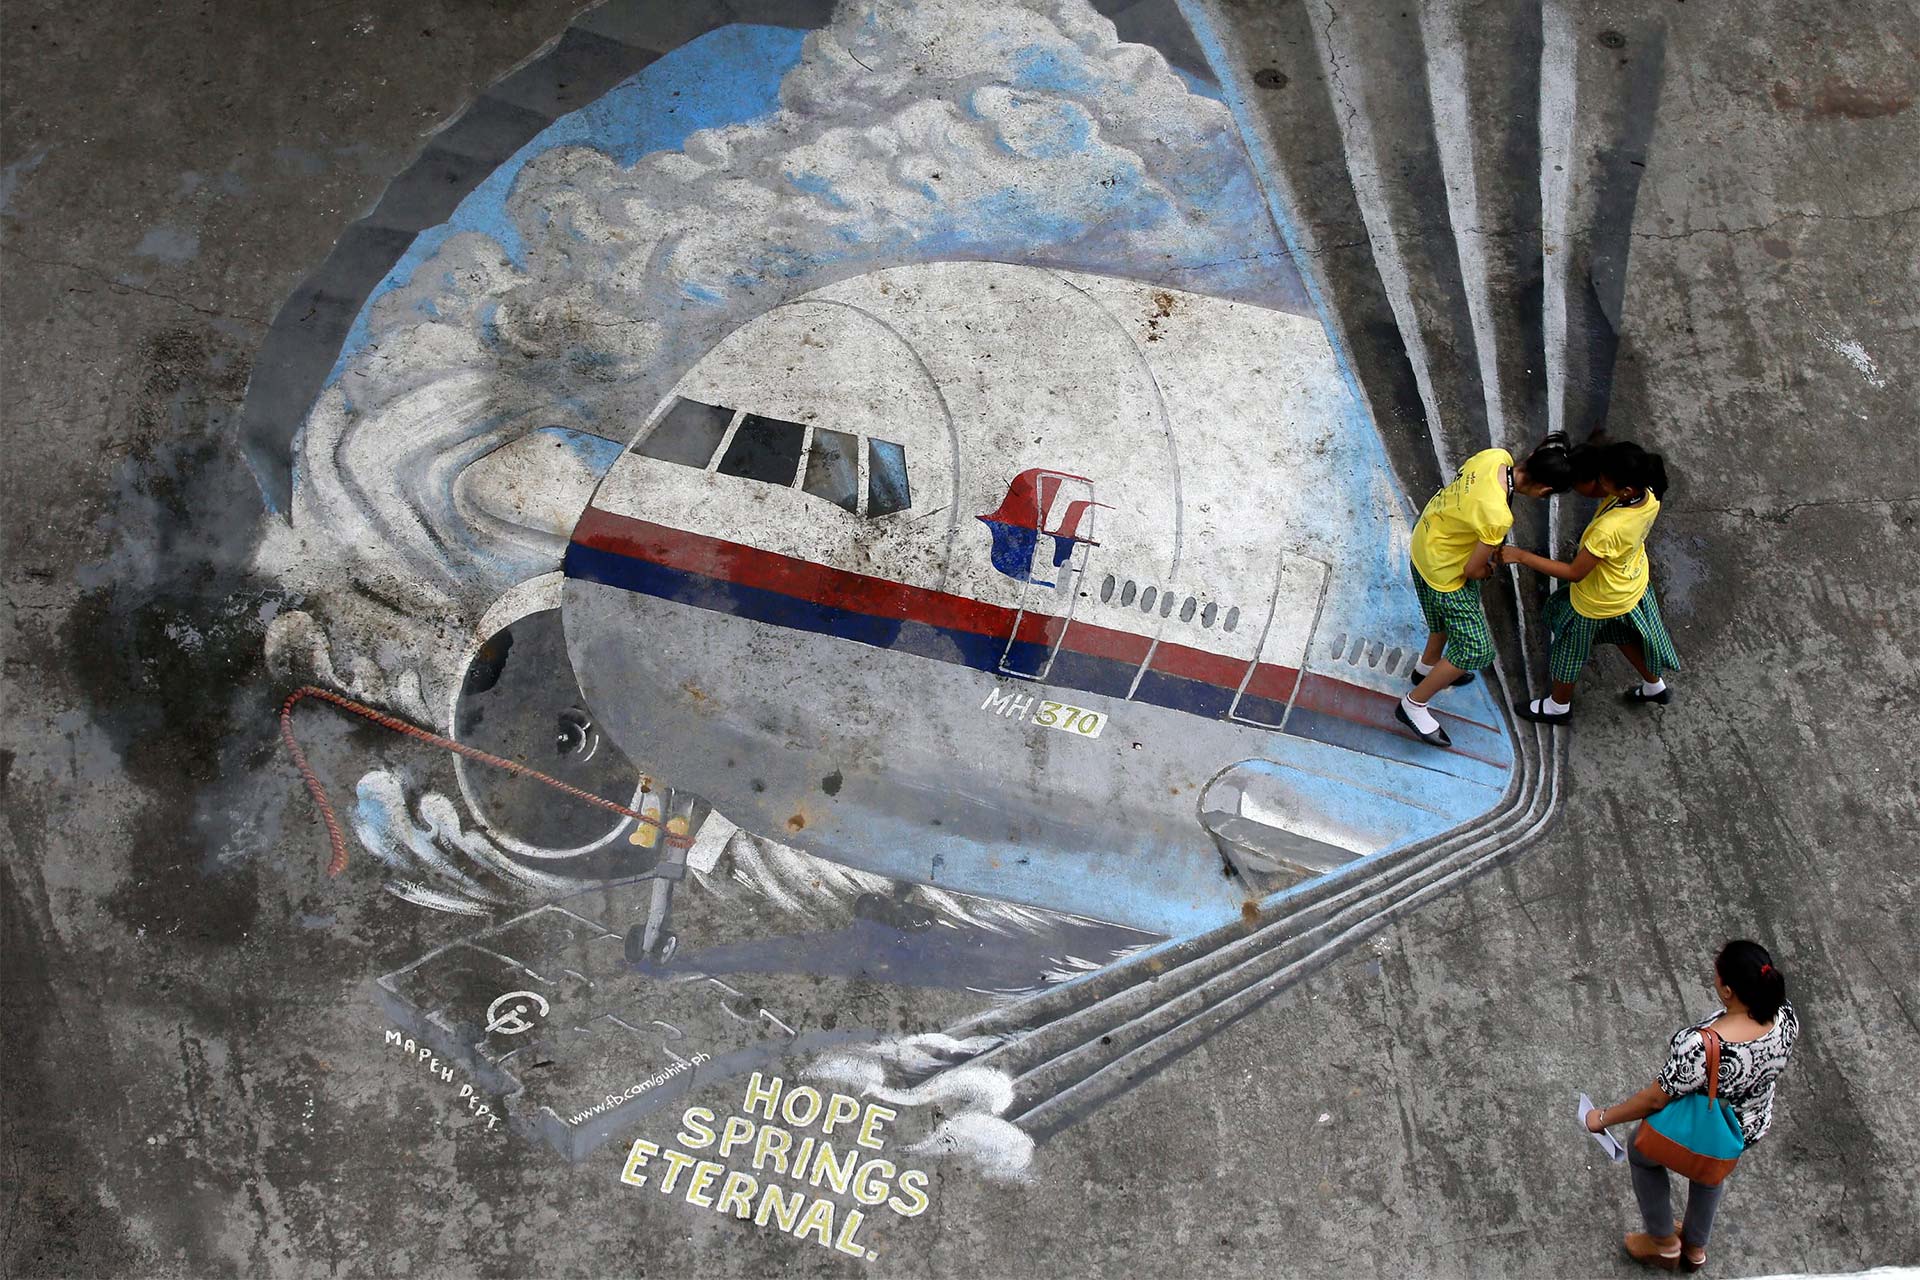 معمای پرواز ۳۷۰ مالزی ۱۰ ساله شد؛ چرا سرنوشت هواپیمای گمشده هنوز نامعلوم است؟